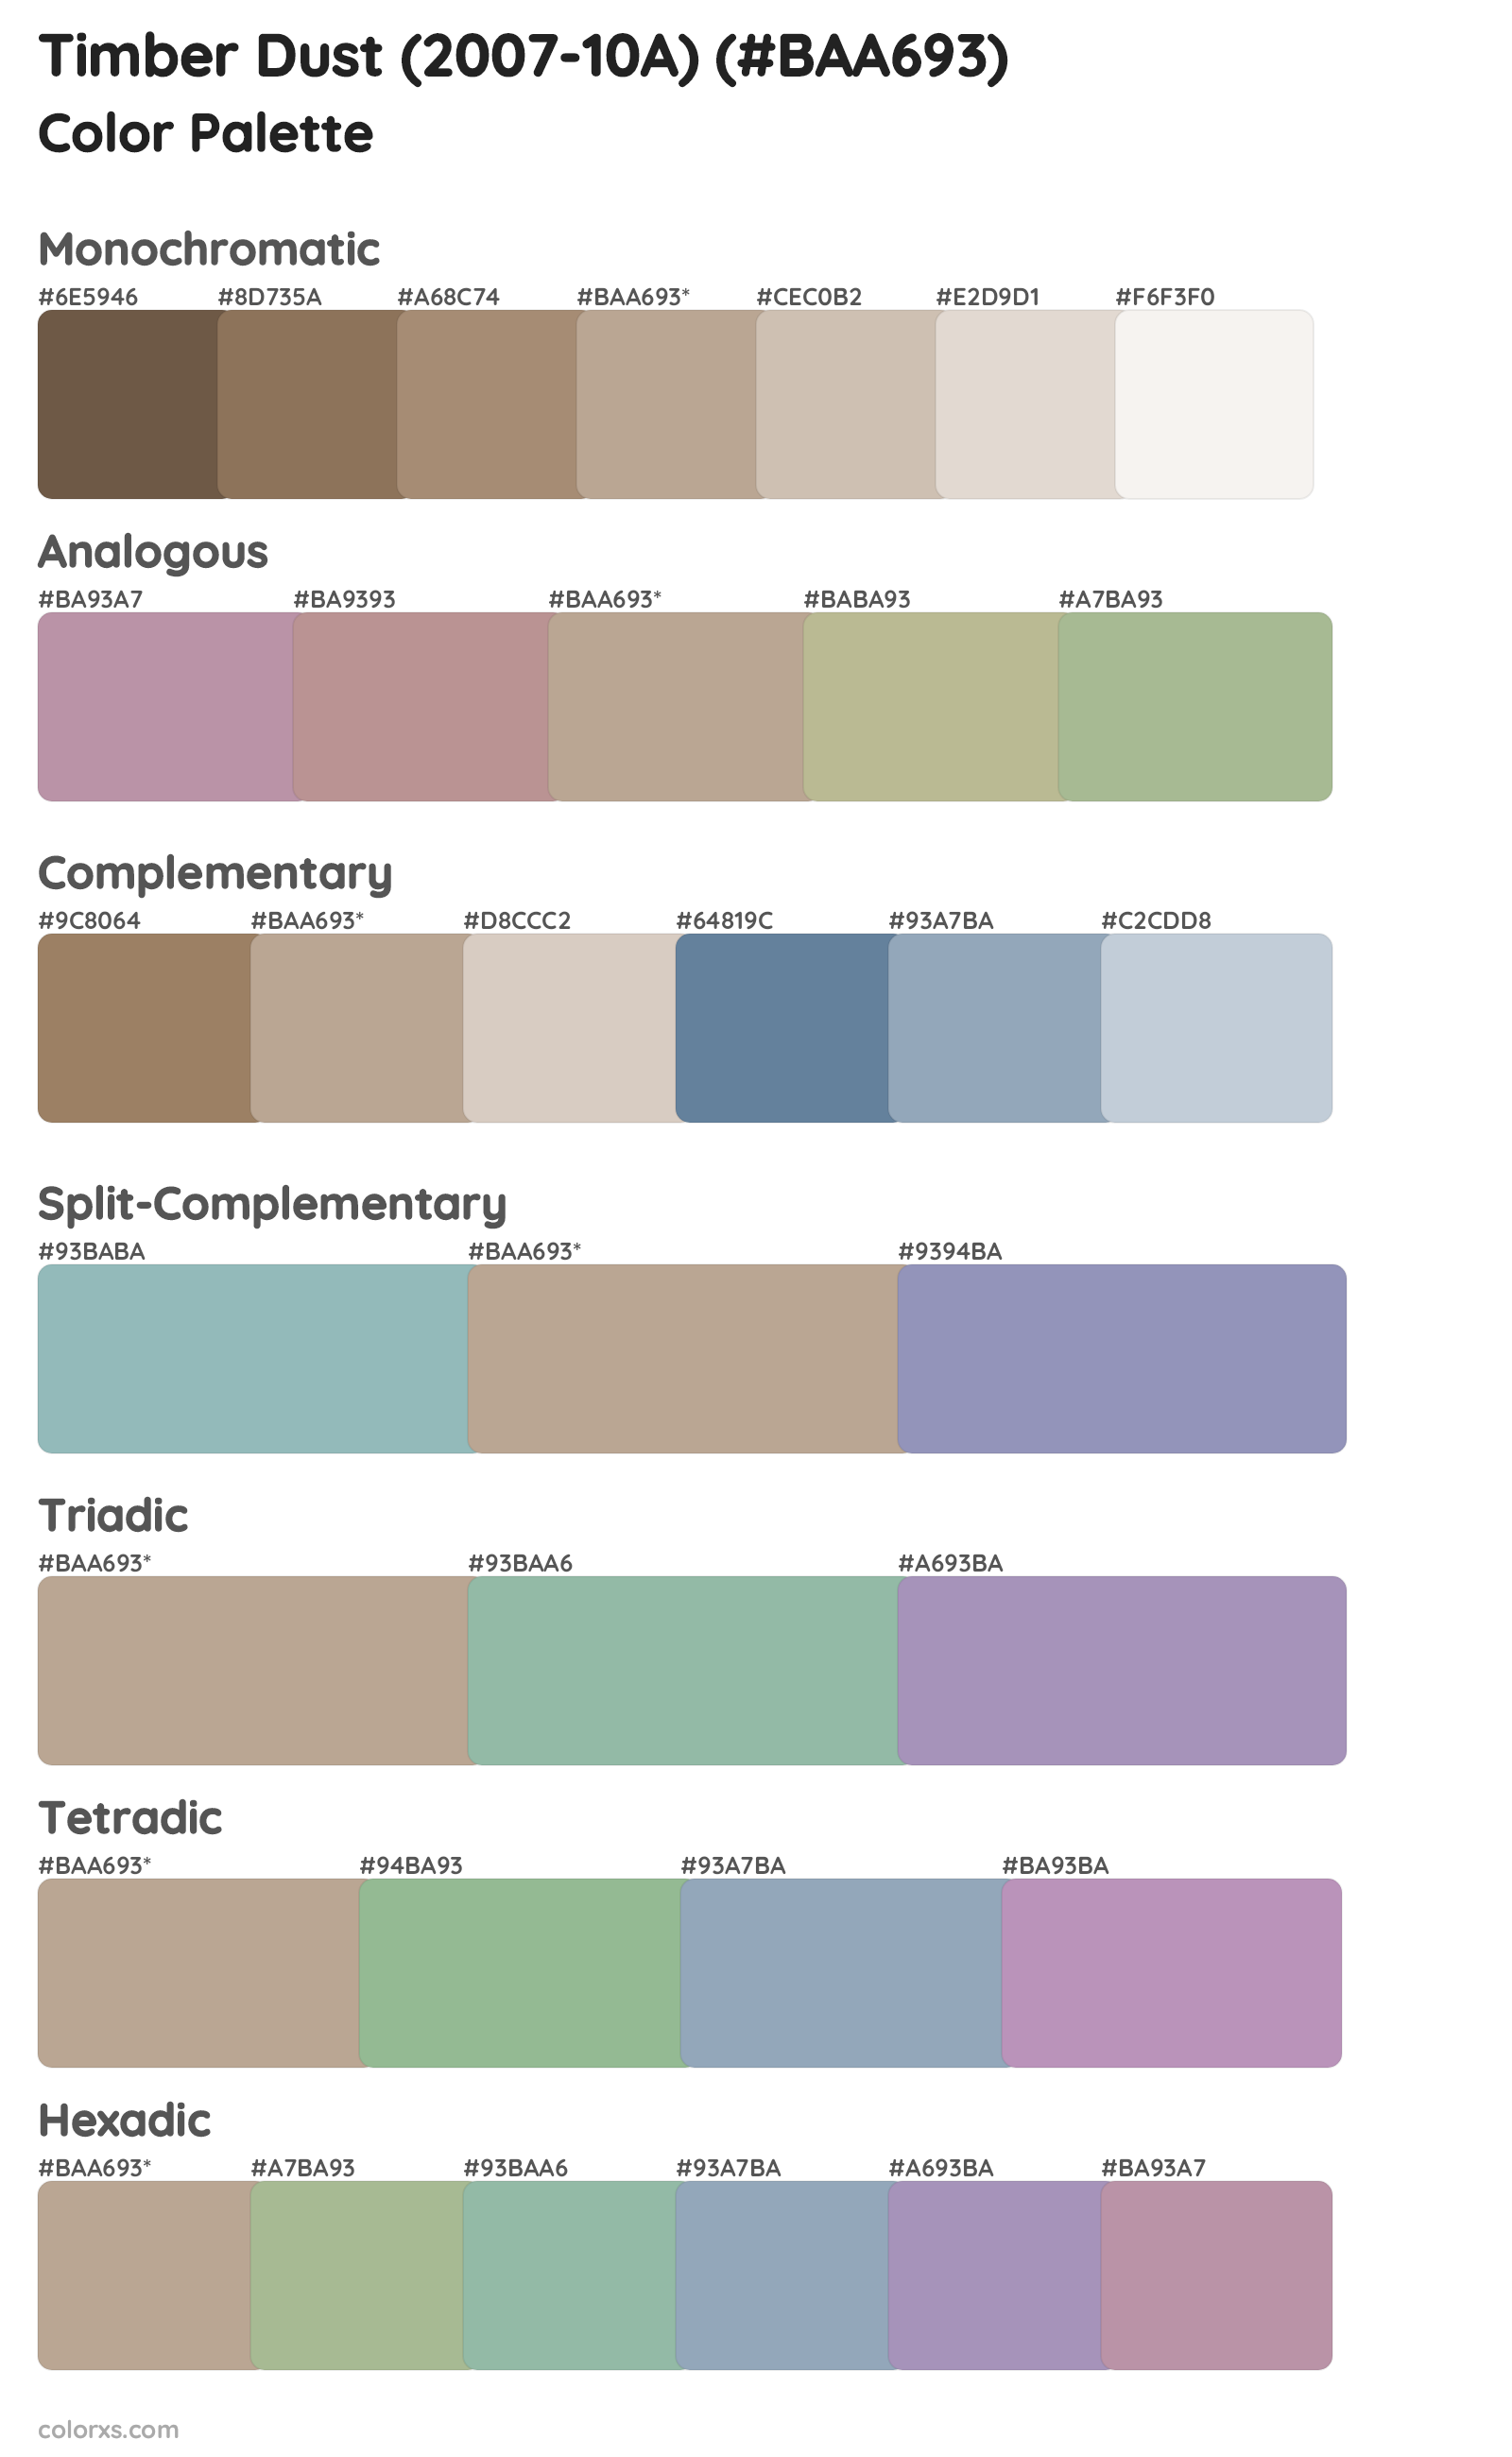 Timber Dust (2007-10A) Color Scheme Palettes